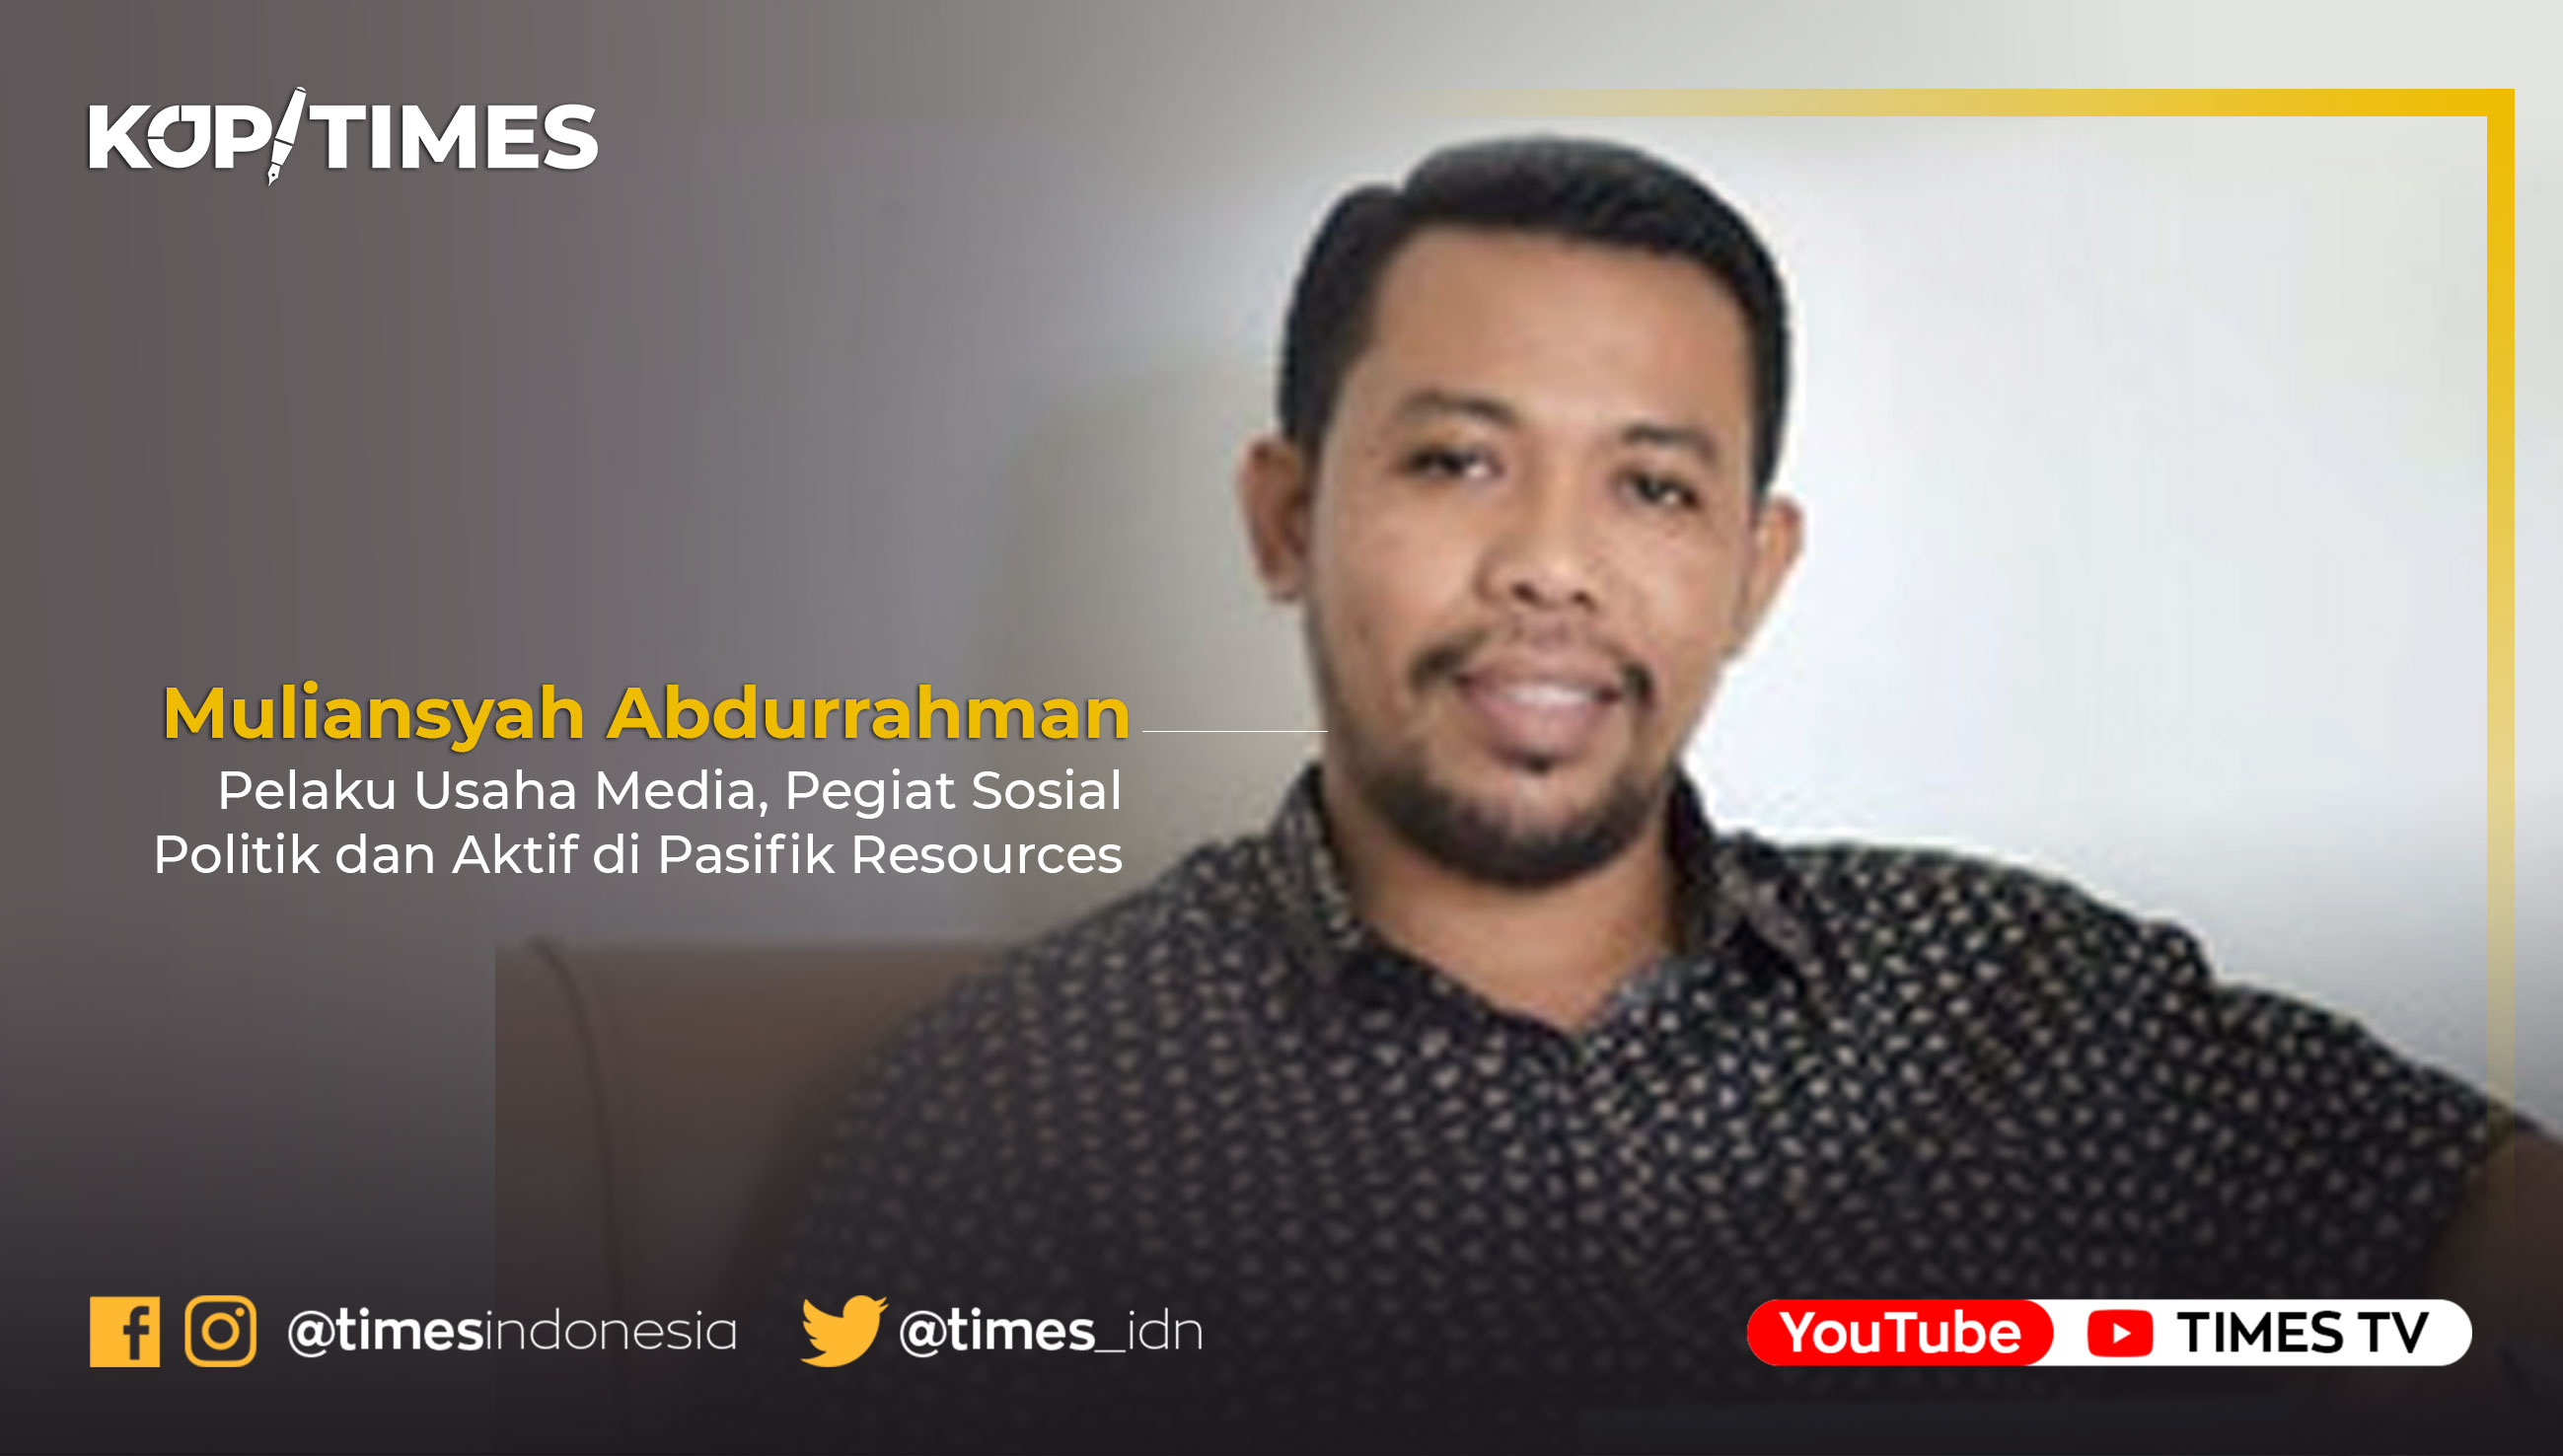 Muliansyah Abdurrahaman Ways, Entrepreneur dan Pegiat Politik Lokal-Demokrasi Indonesia.